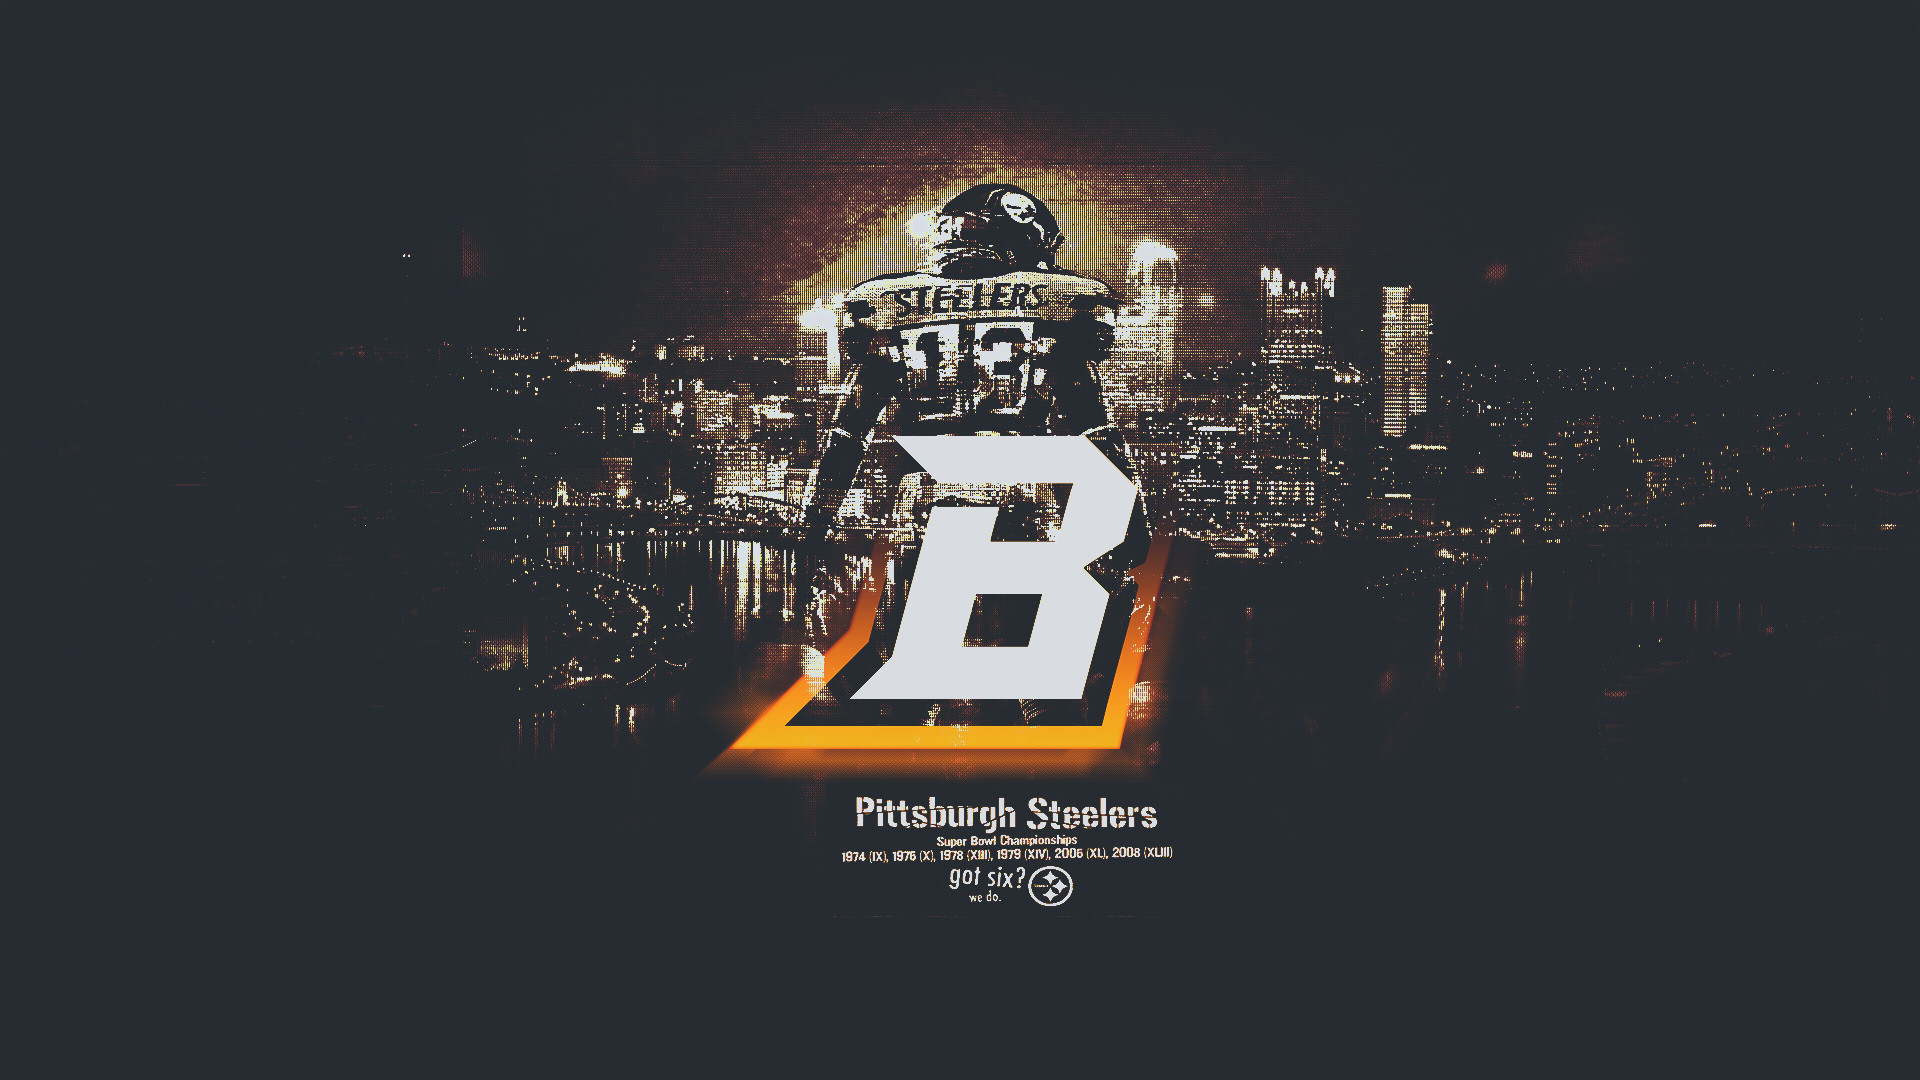 Get 06. Обои на айфон NFL. Обои NFL фото. Pittsburgh HD 1080. Крутые фото обои на айфон NFL 2022.